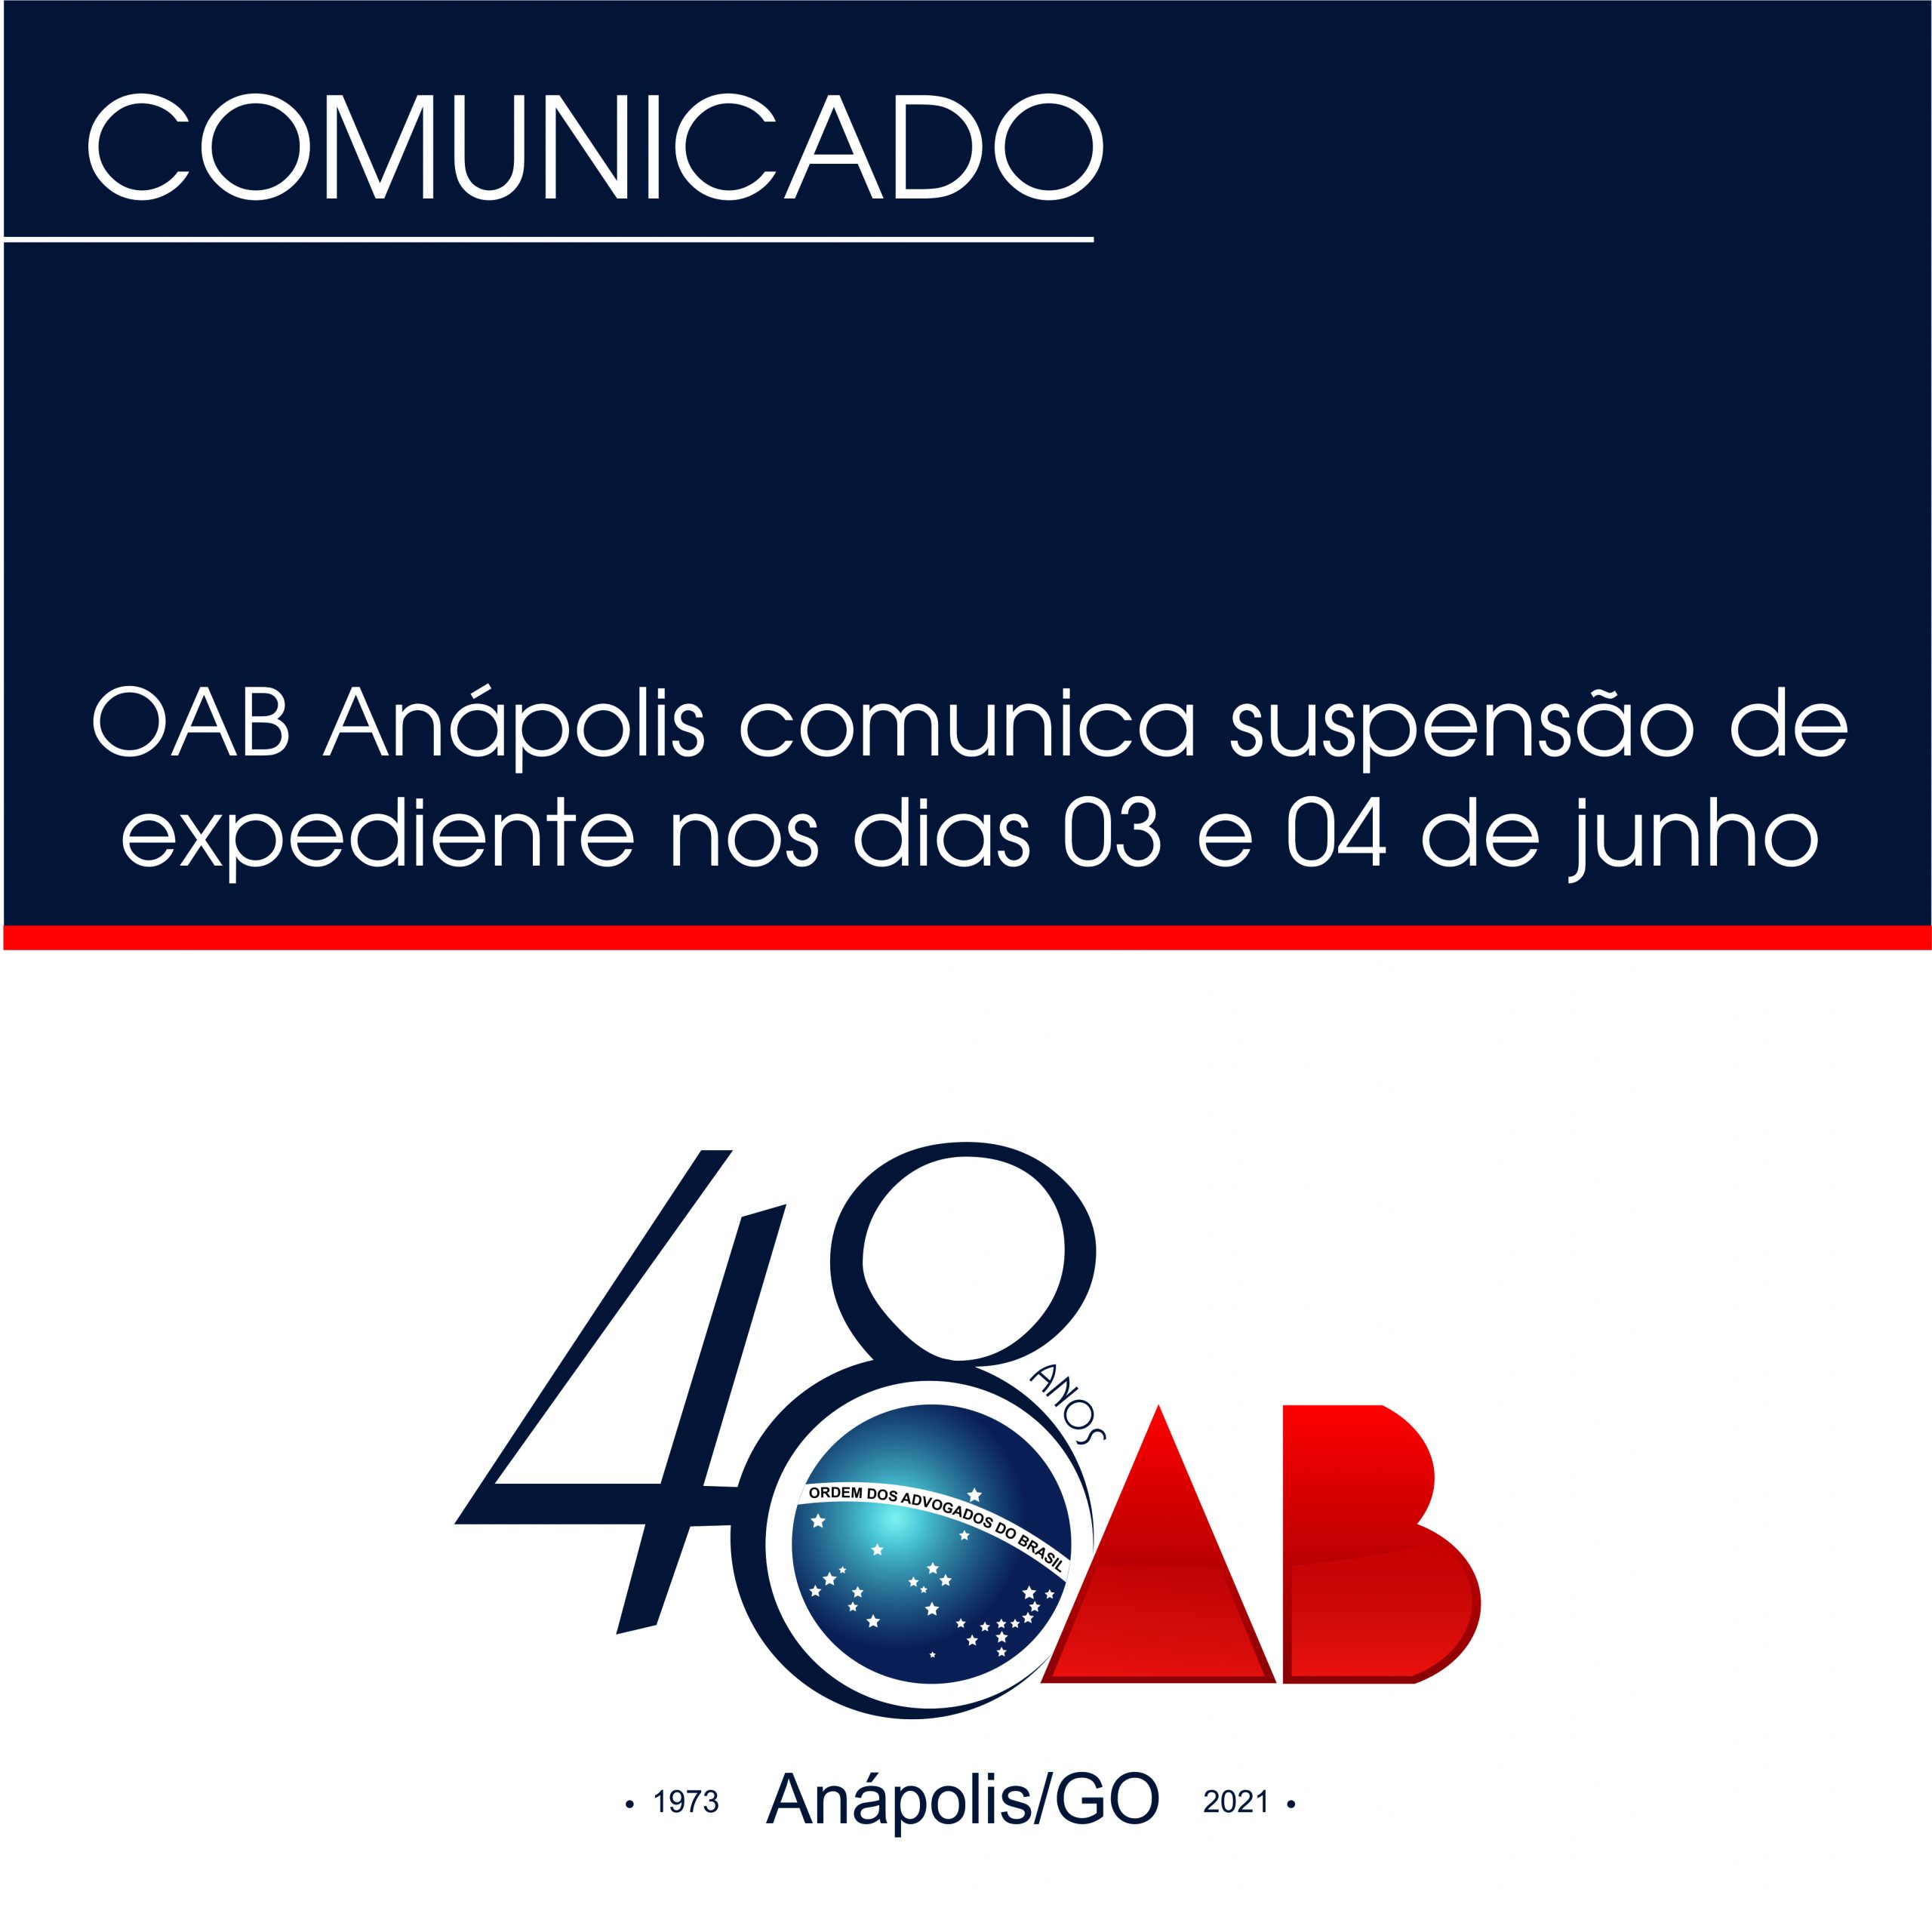 OAB Anápolis comunica suspensão de expediente nos dias 03 e 04 de junho